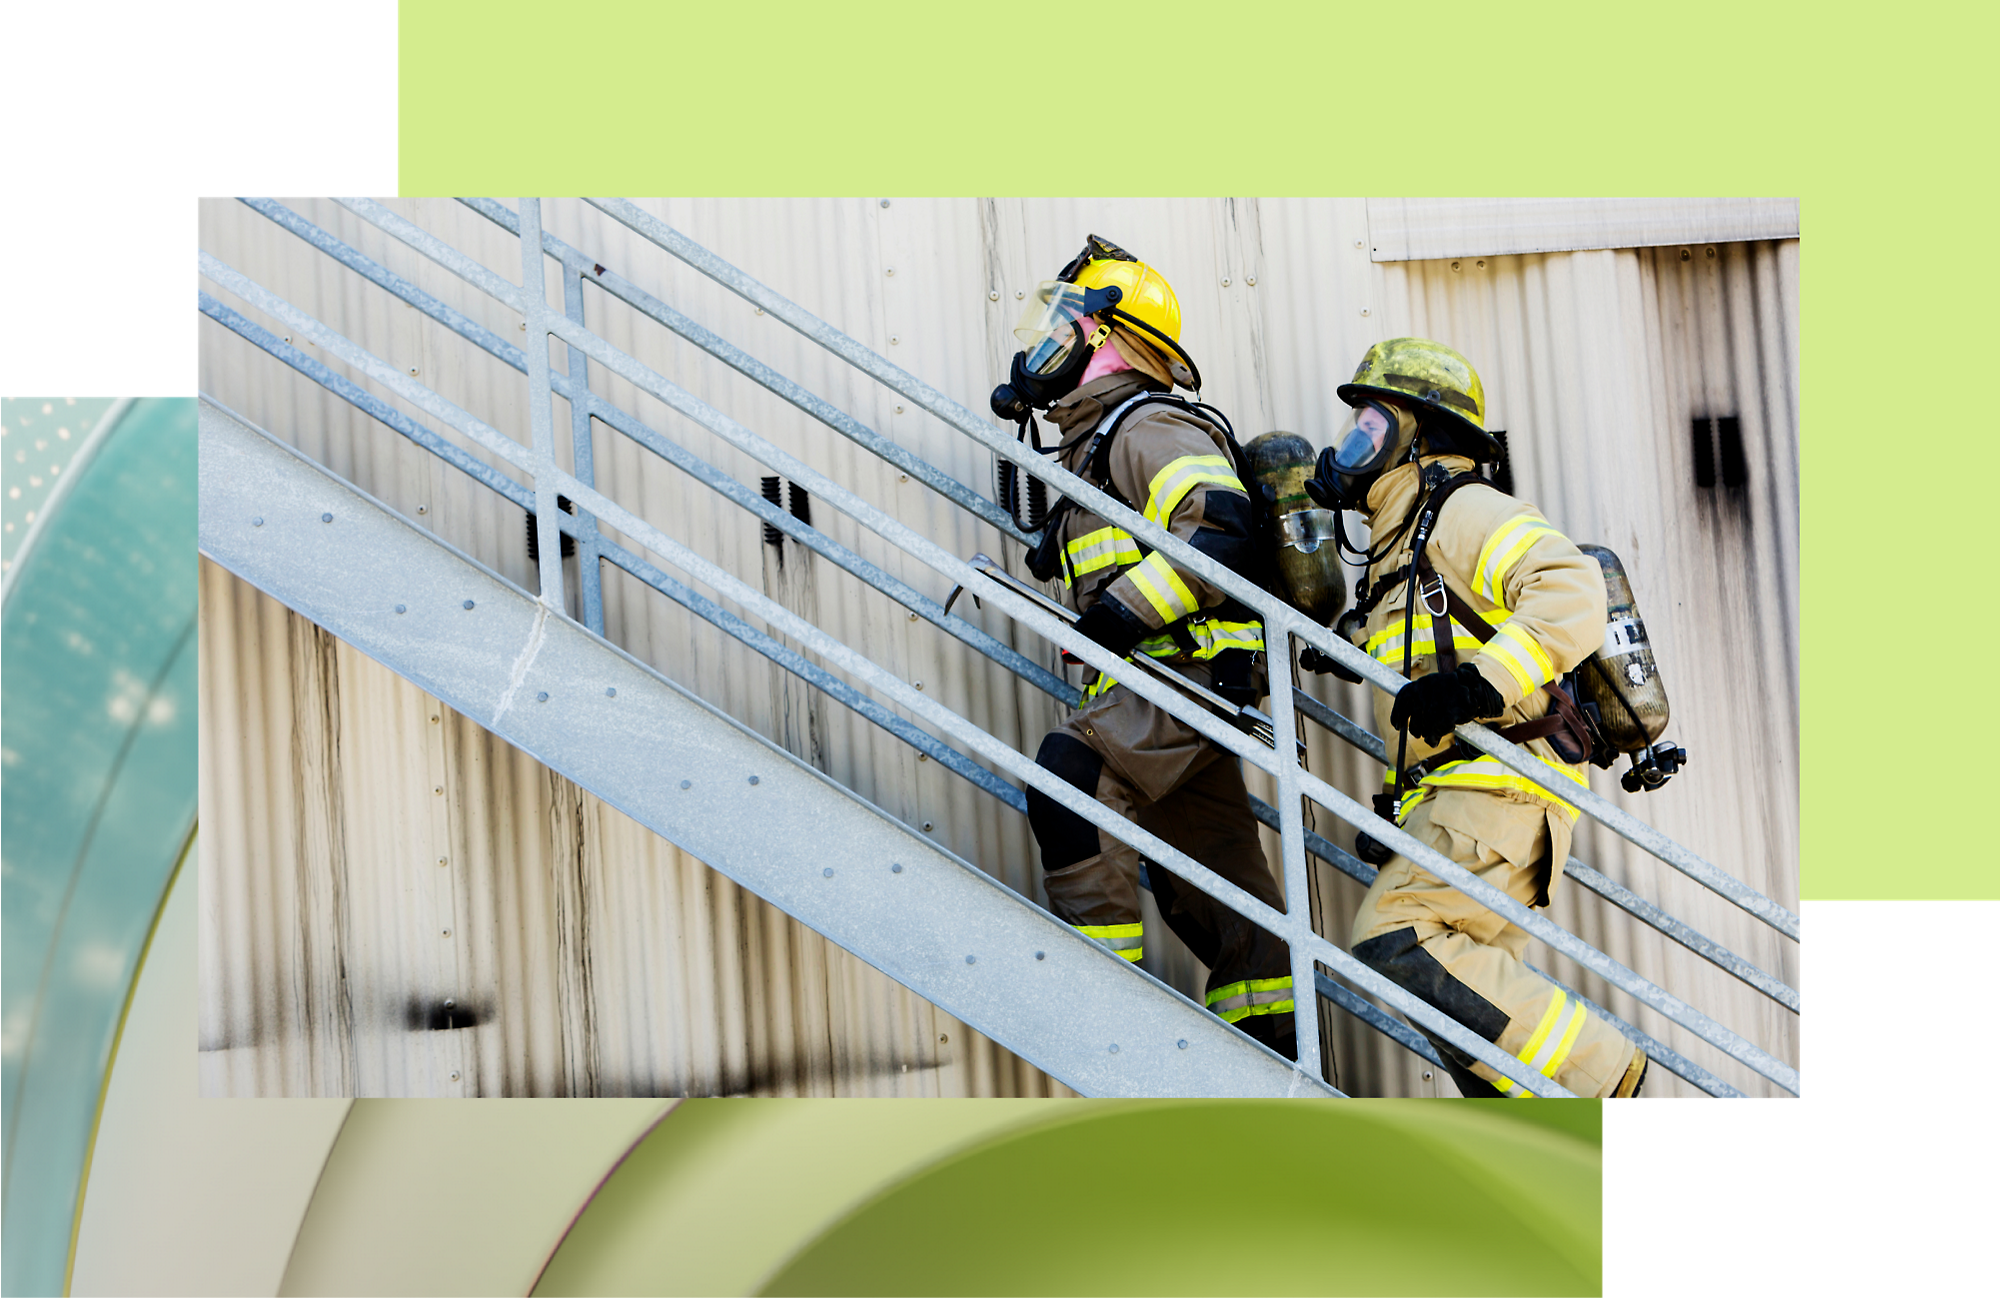 Divi ugunsdzēsēji pilnā ekipējumā kāpj pa ārējām metāla kāpnēm ārkārtas situācijas apmācību laikā.